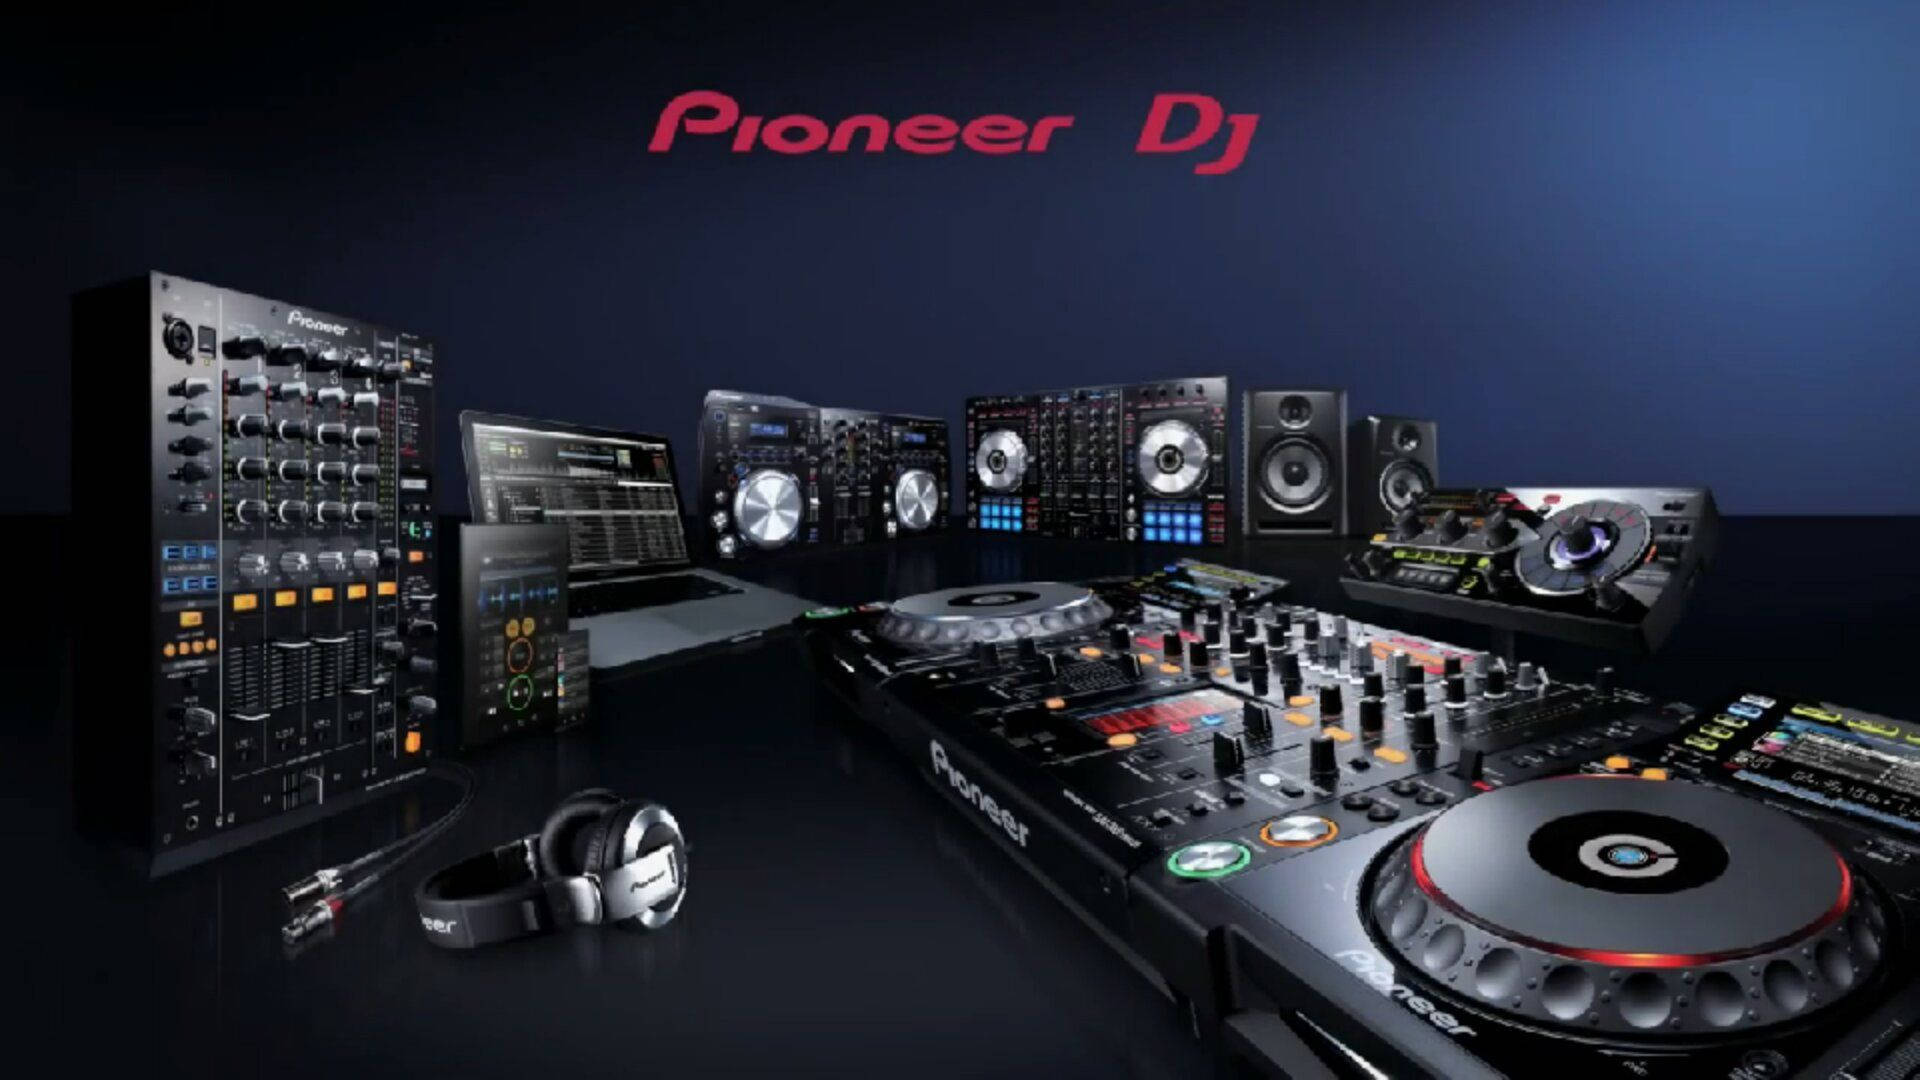 Pioneer Dj Mixer Equipment